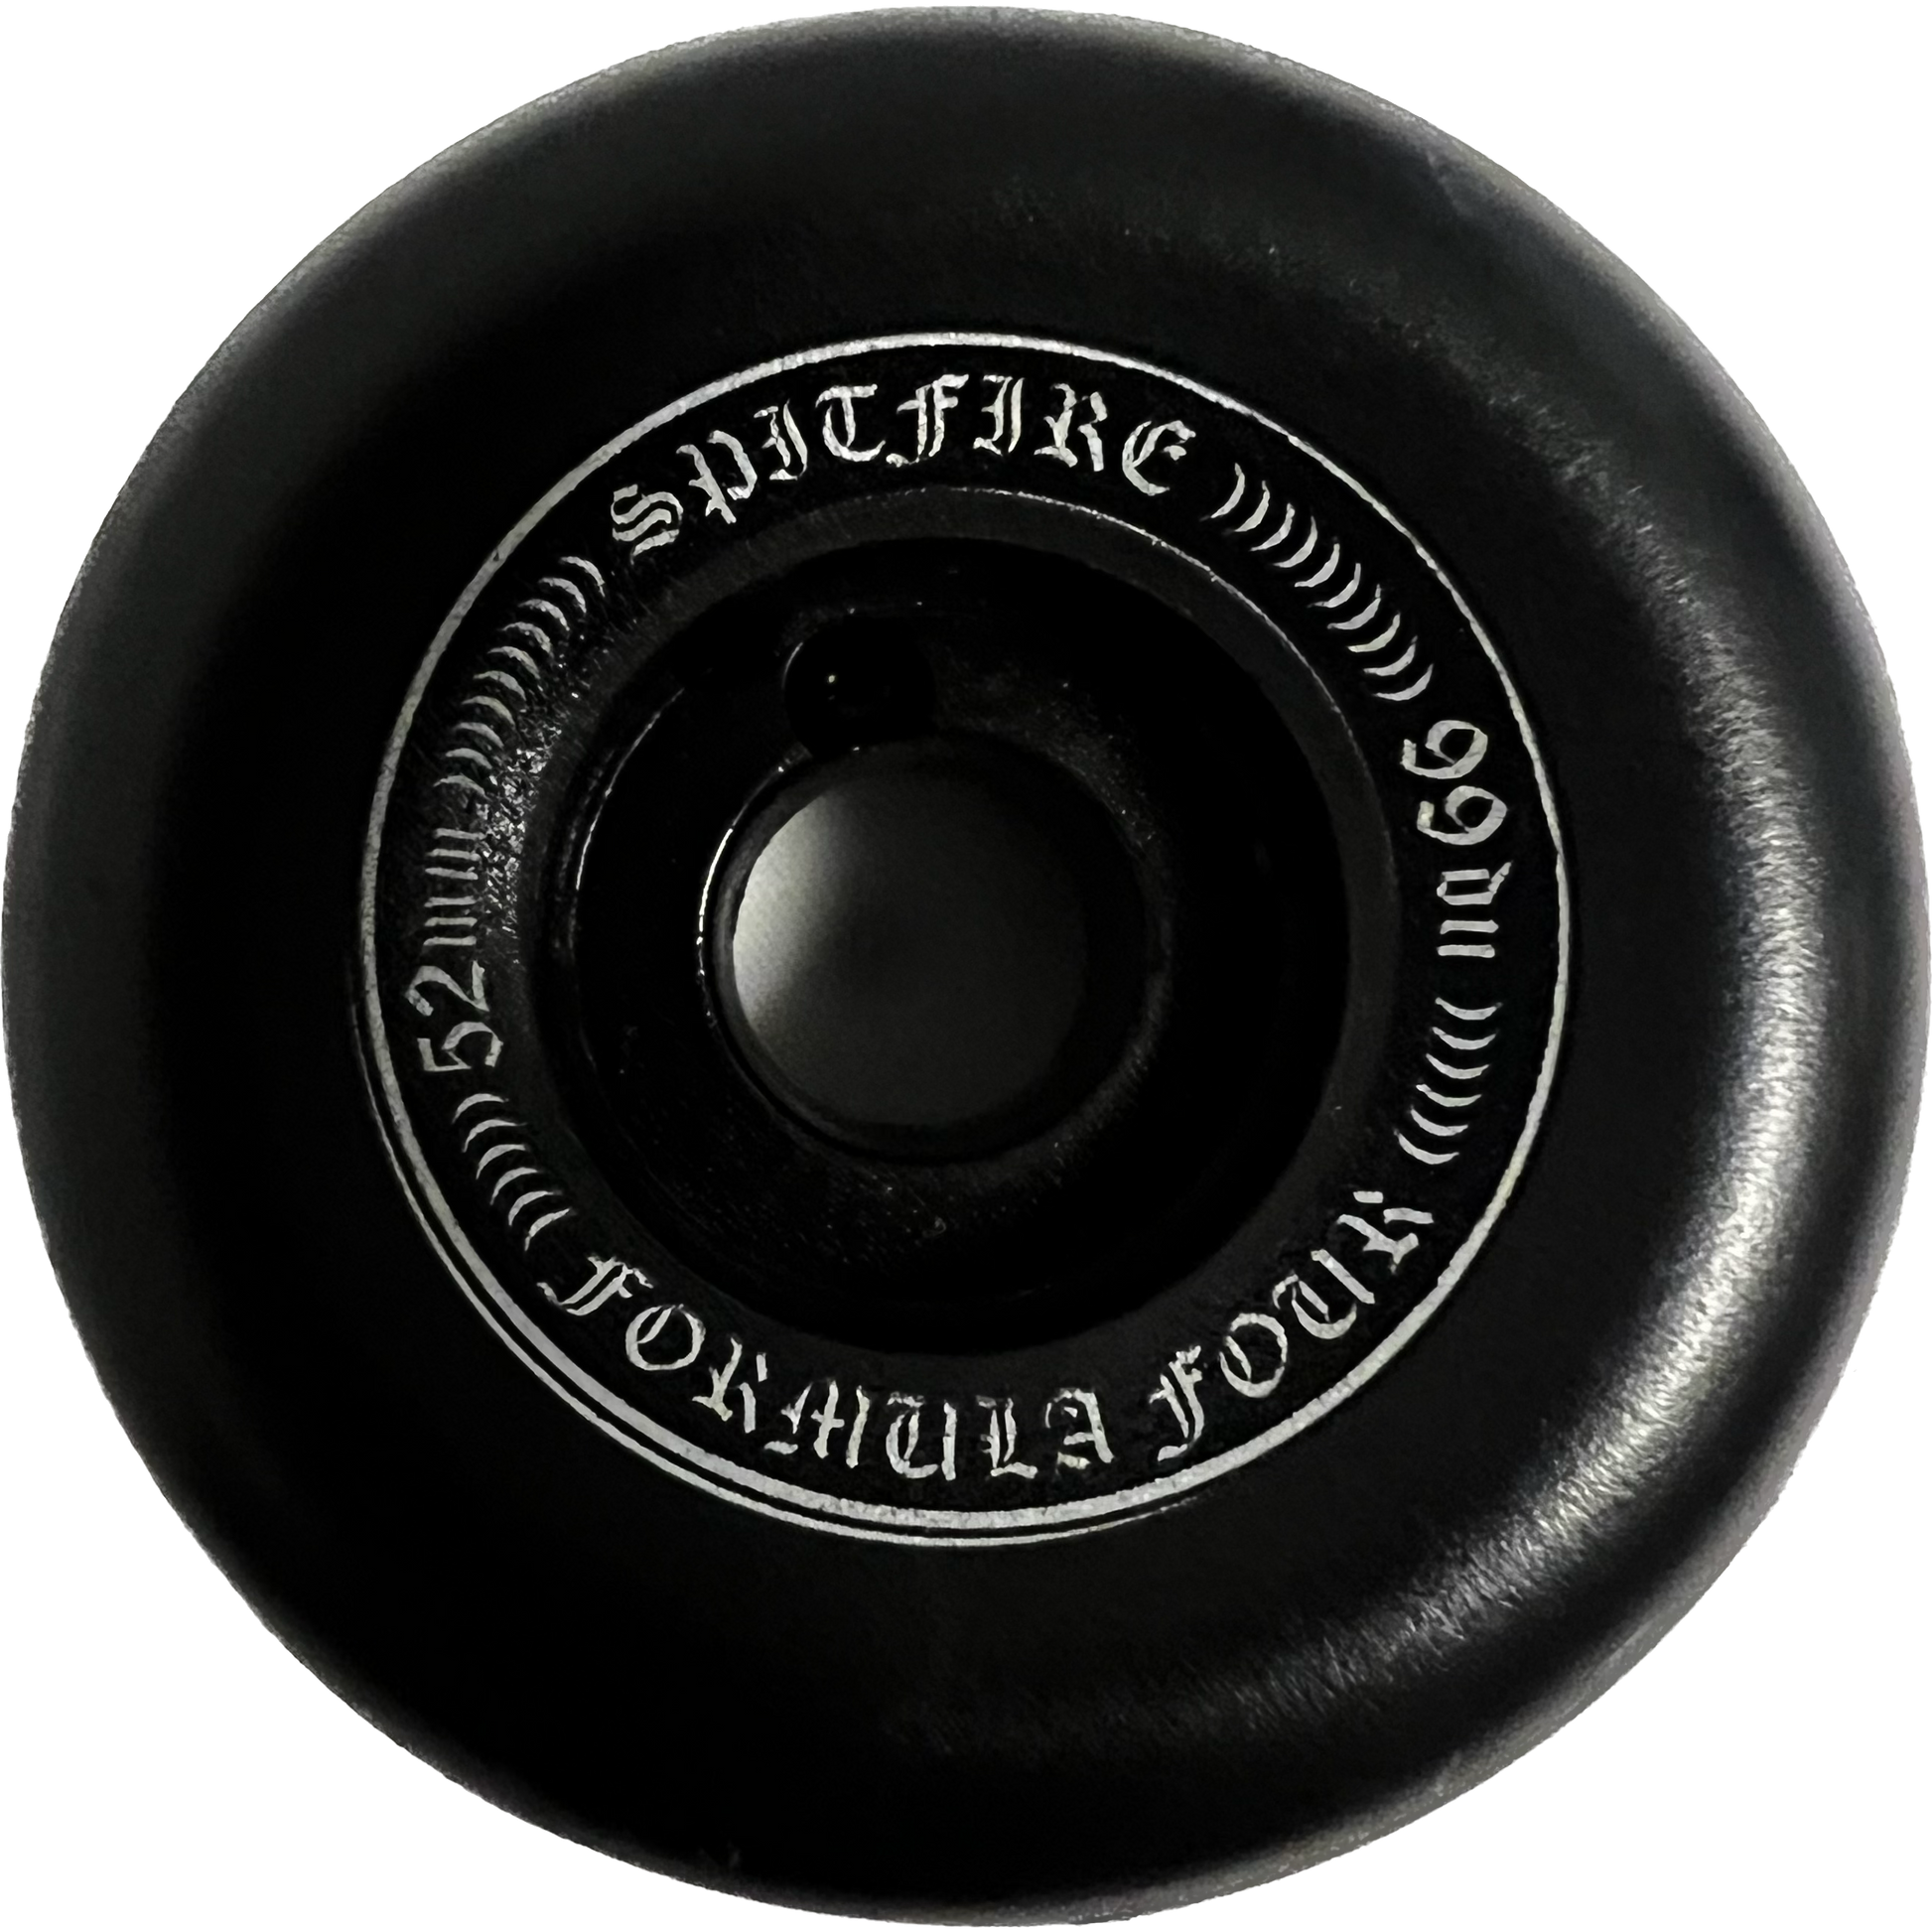 Spitfire Formula Four OG Classic 52mm 99d Set Of 4 Skateboard Wheels Black